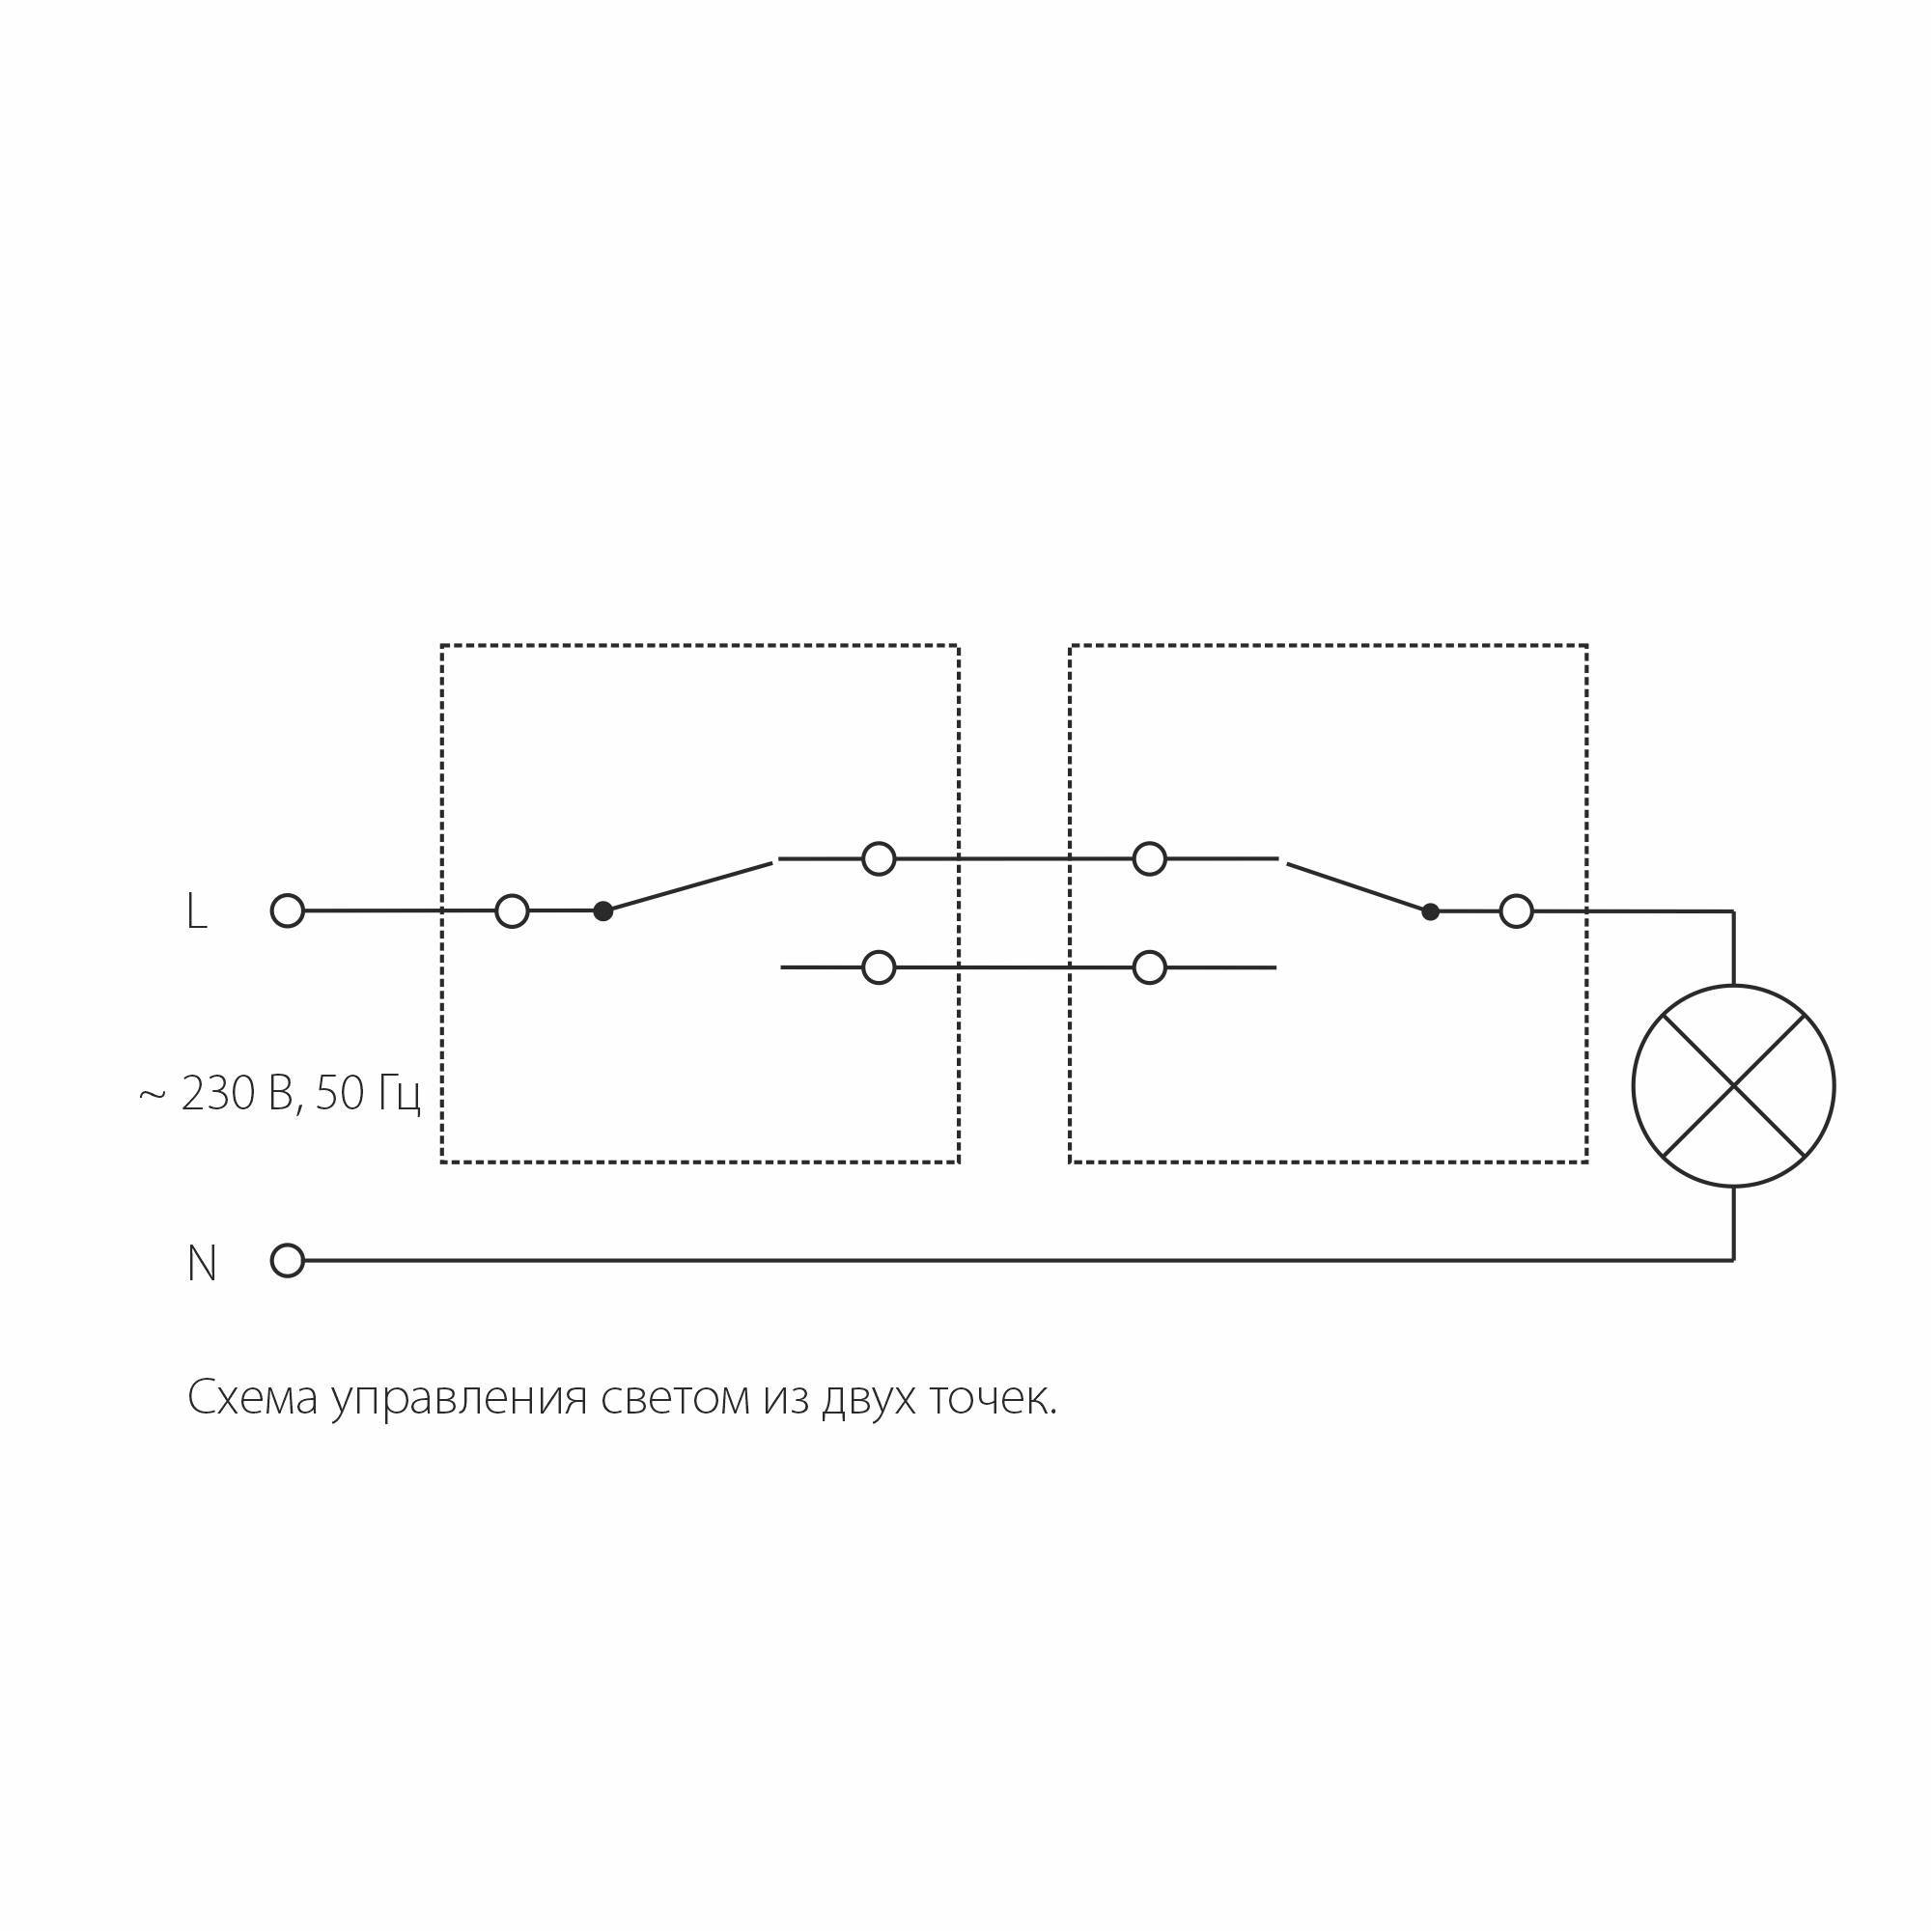 Выбор и установка одноклавишного выключателя: конструкция и характеристики электровыключателя